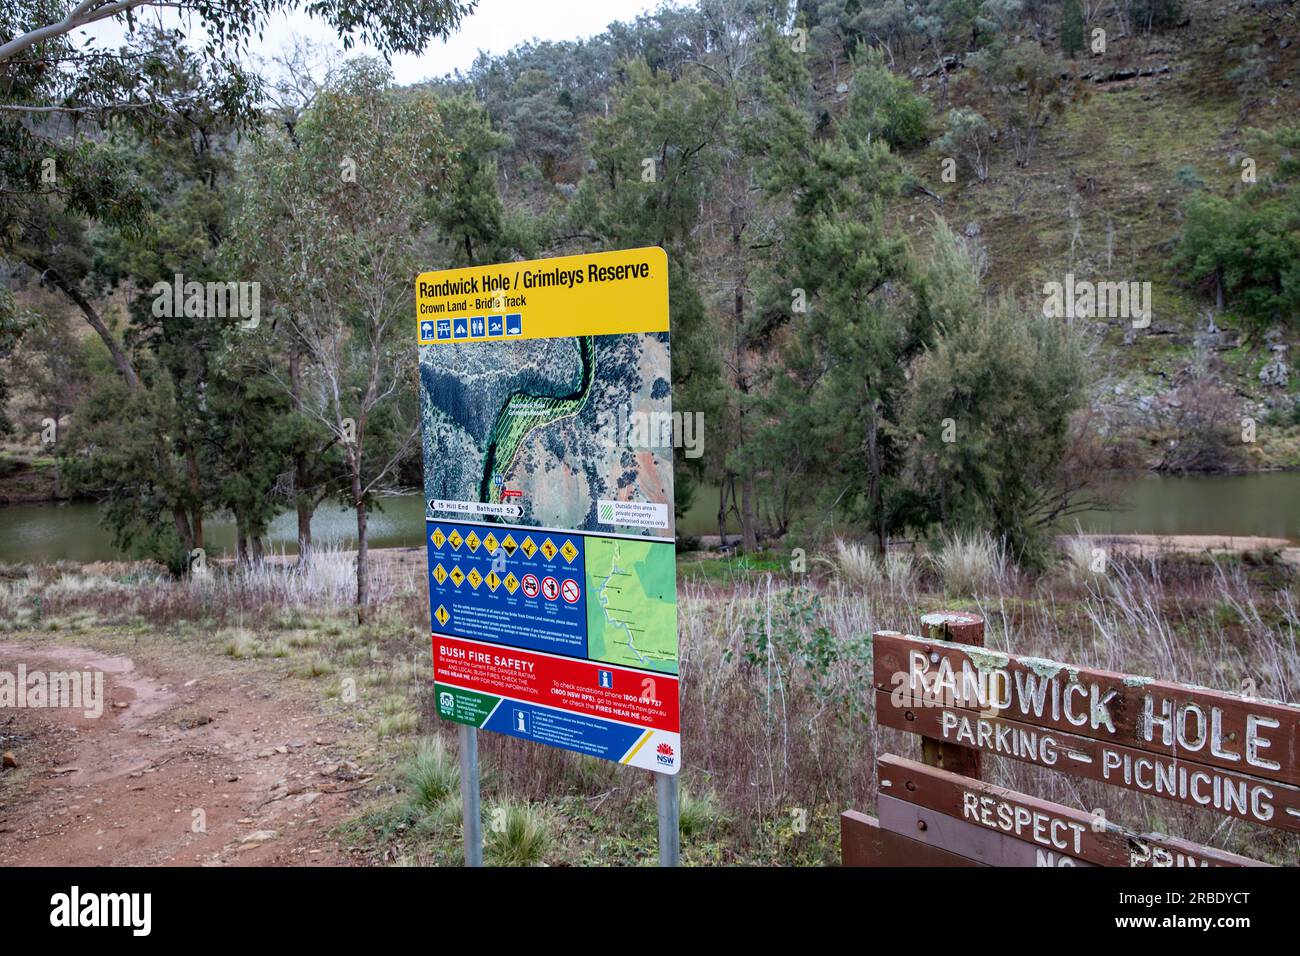 Hill End, Randwick Hole e il campo di riserva di Grimley accanto al fiume Macquarie, New South Wales, Australia Foto Stock